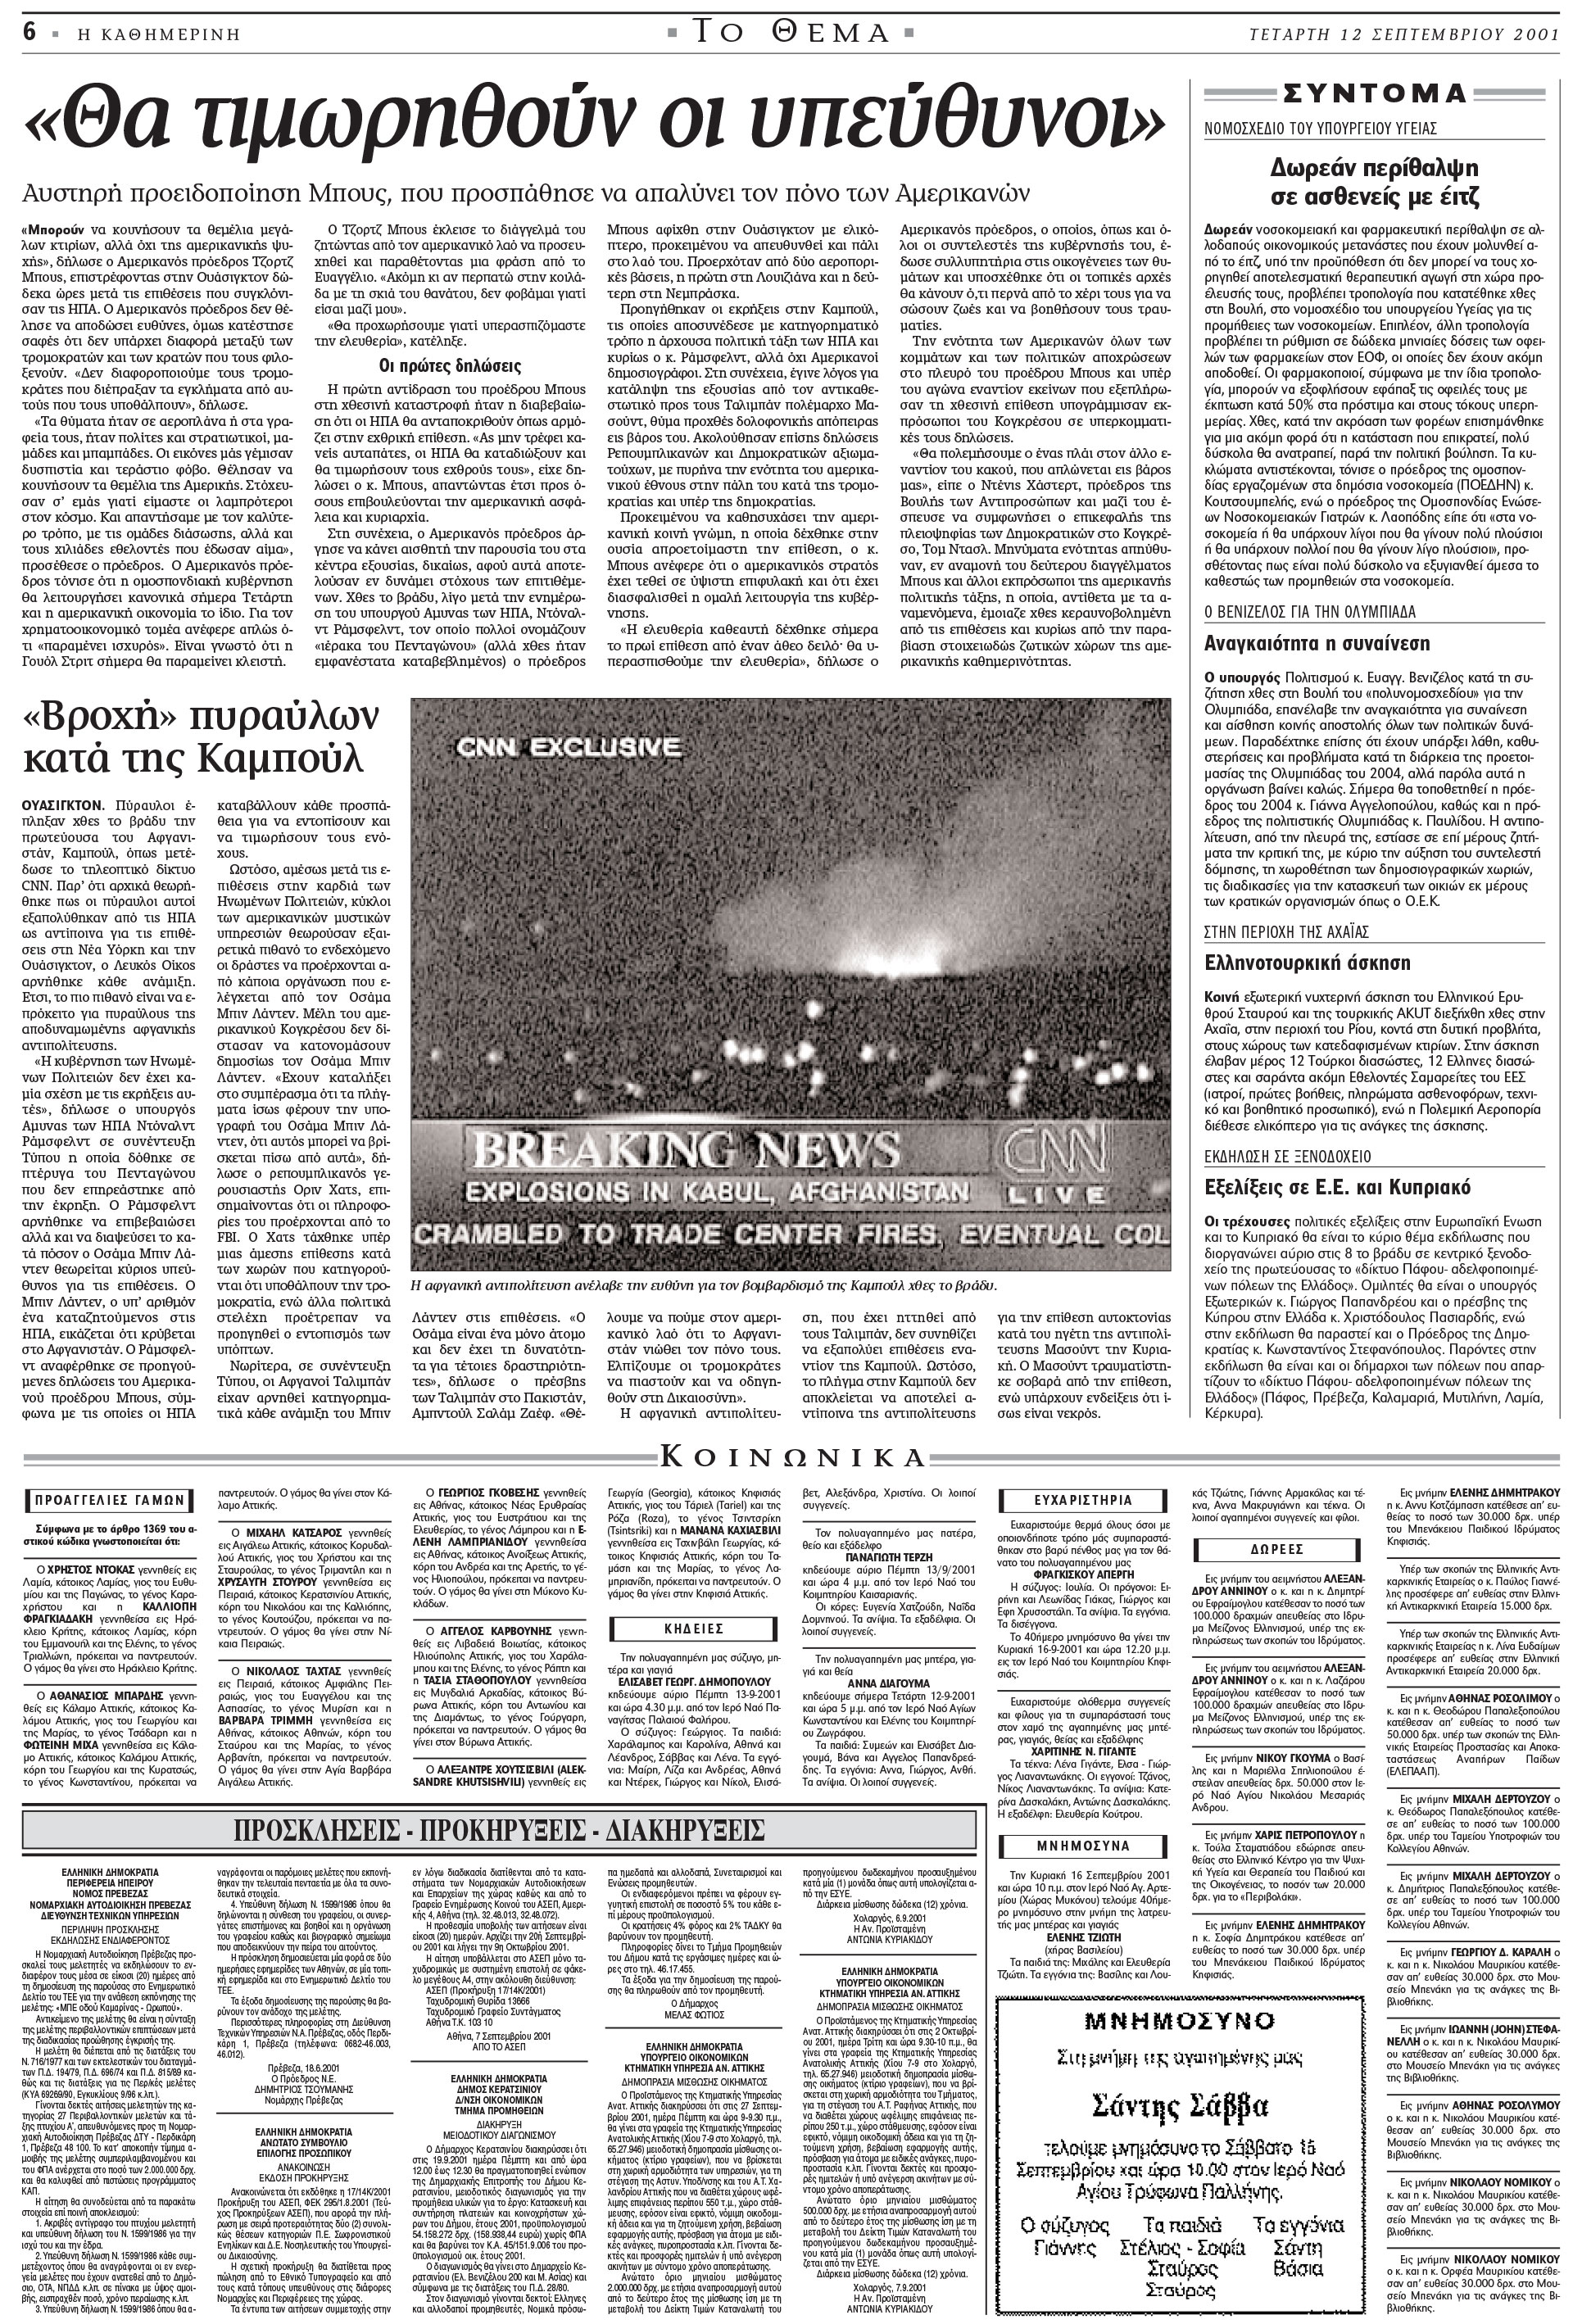 Σαν σήμερα: 11 Σεπτεμβρίου 2001 – Τρομοκρατικό χτύπημα στους Δίδυμους Πύργους-5